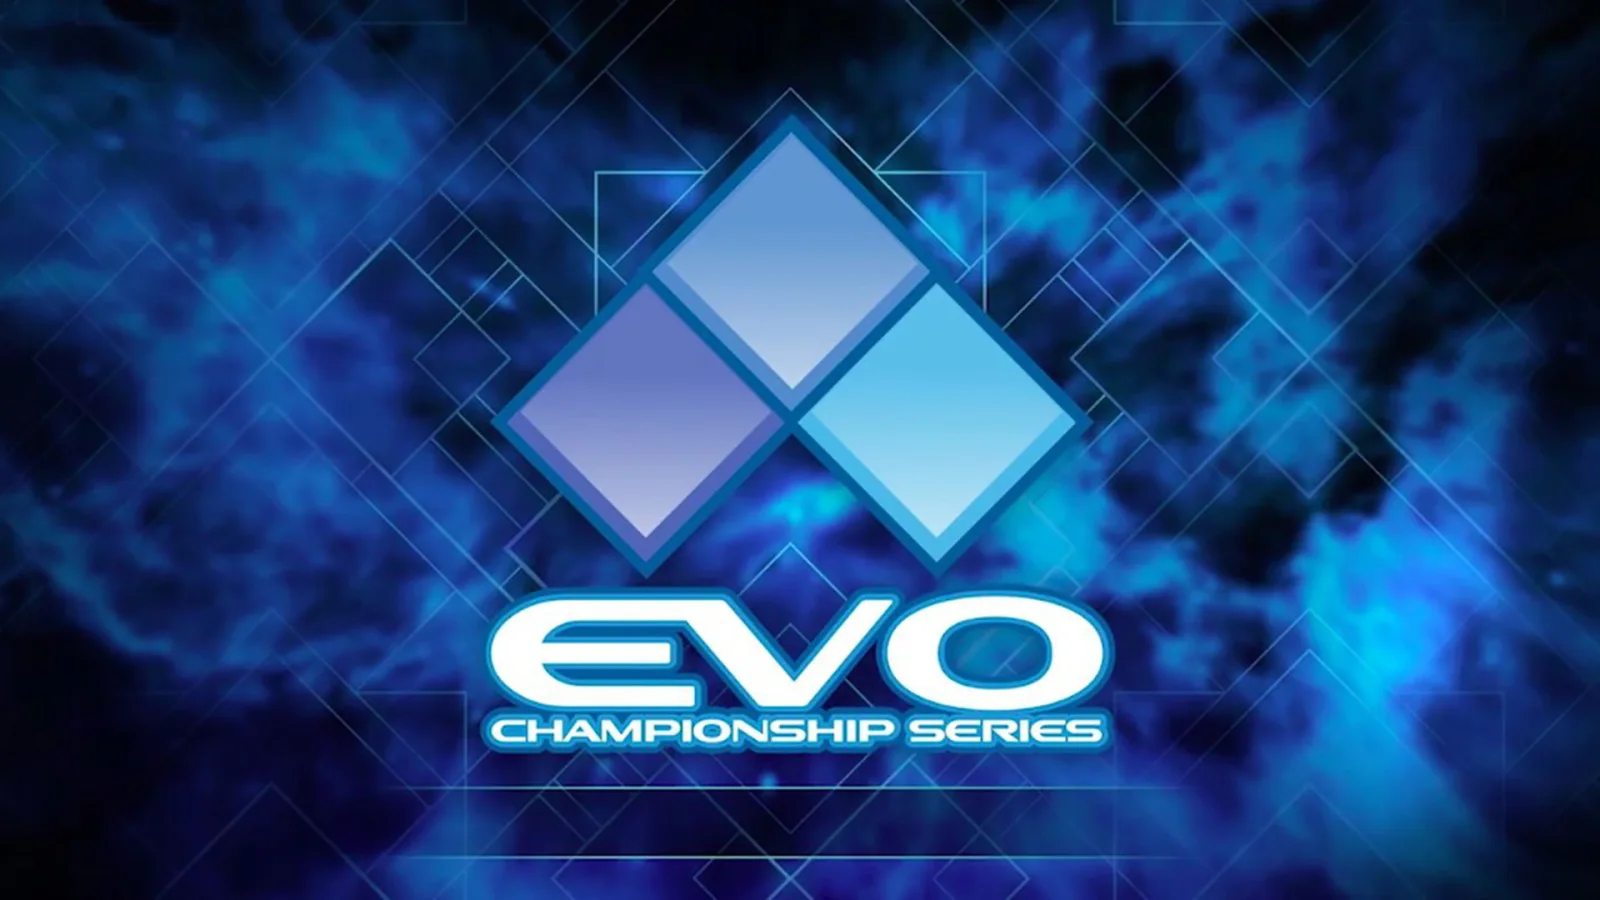 前 EVO 总裁乔伊•库勒涉嫌性侵下台，EVO OL 赛事取消